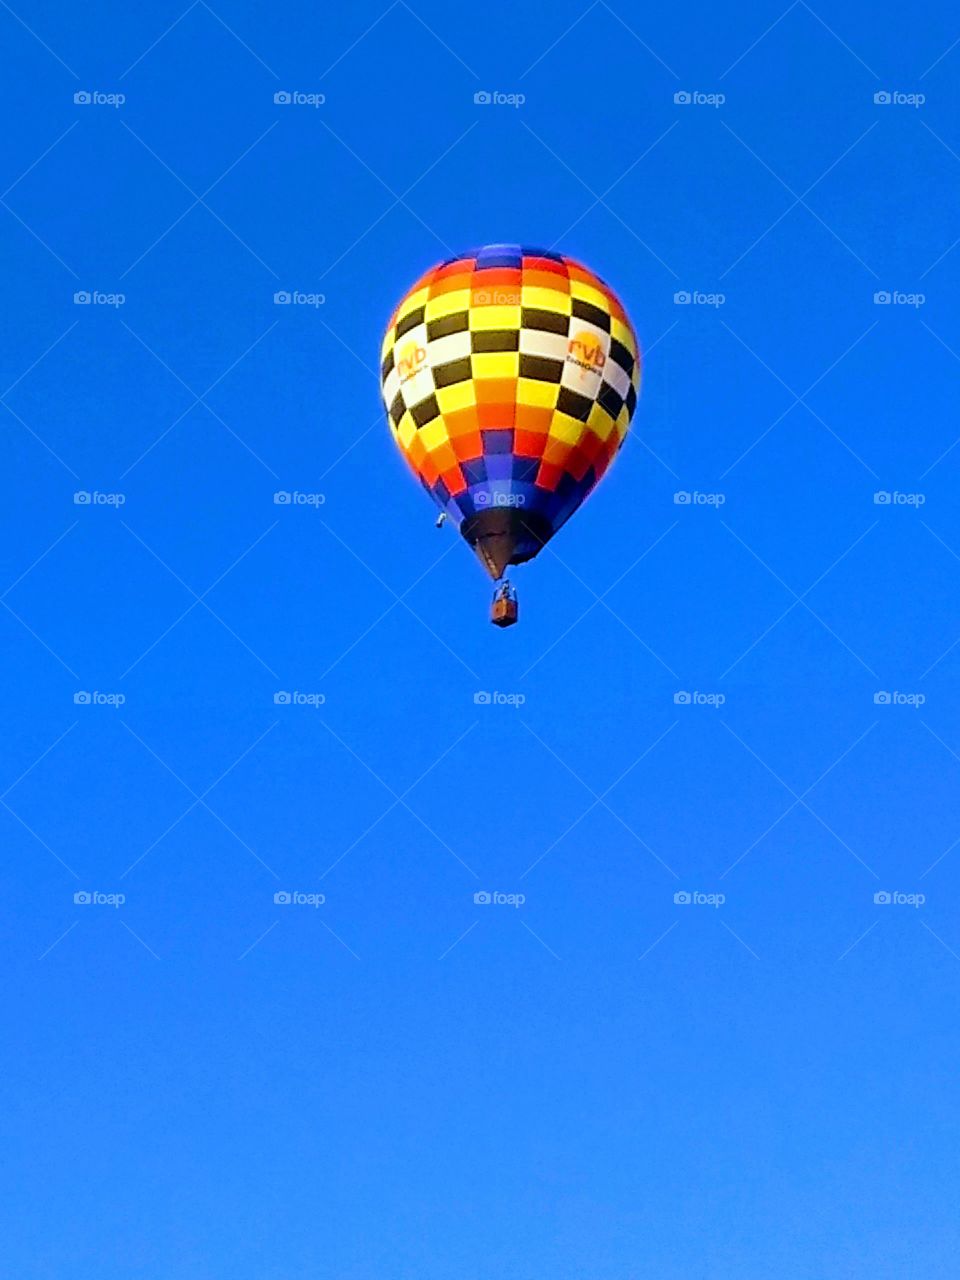 air hot balloon